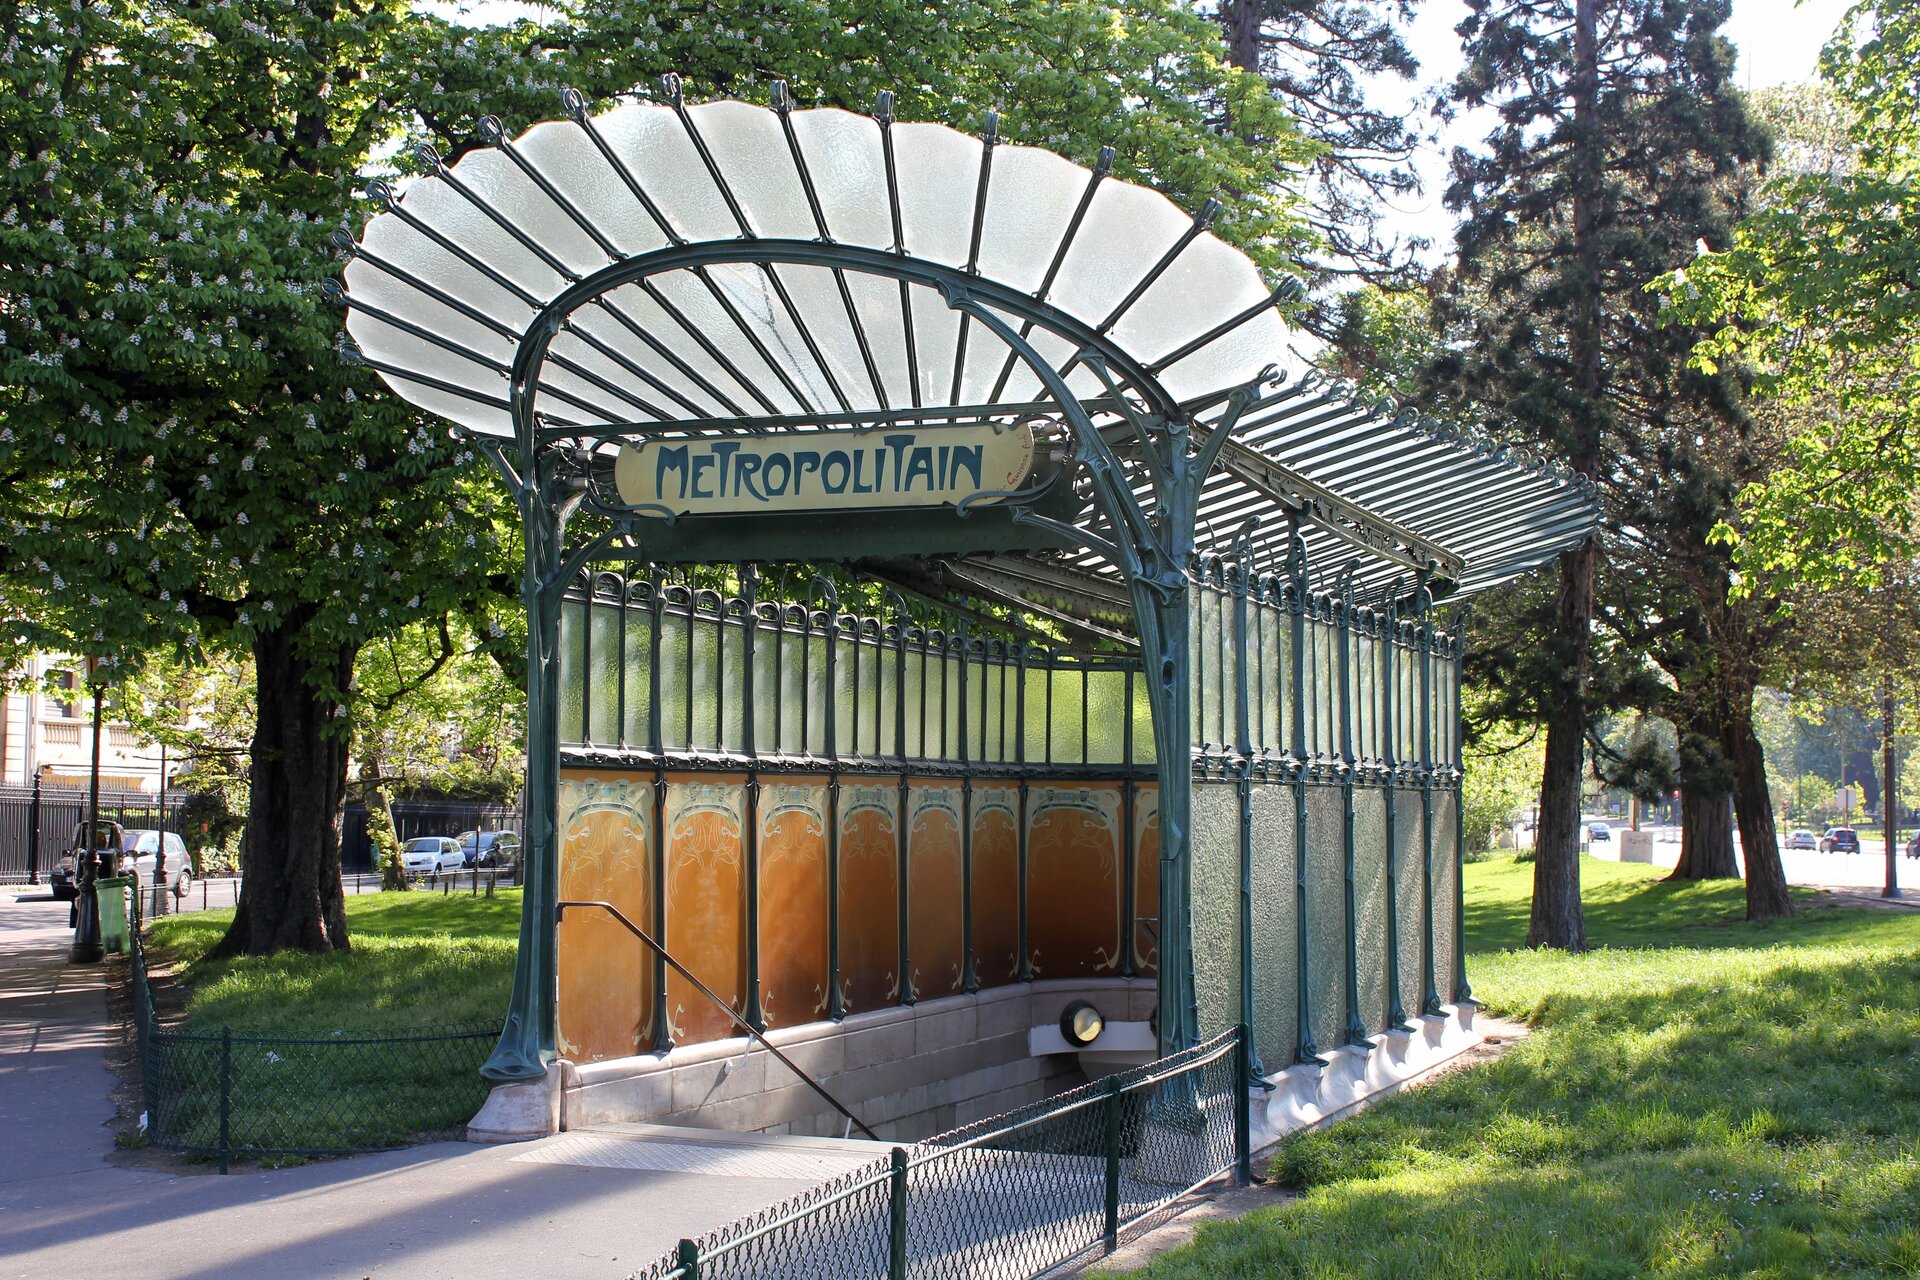 Ilustracja przedstawia fotografię ukazującą wejście do podziemnej stacji metra. Pod zadaszeniem wejścia do stacji wisi tabliczka z napisem „Metropolitan”. Nad wejściem widać szklany dach w kształcie wachlarza. Wejście mieści się w terenie zielonym, otoczone jest drzewami.